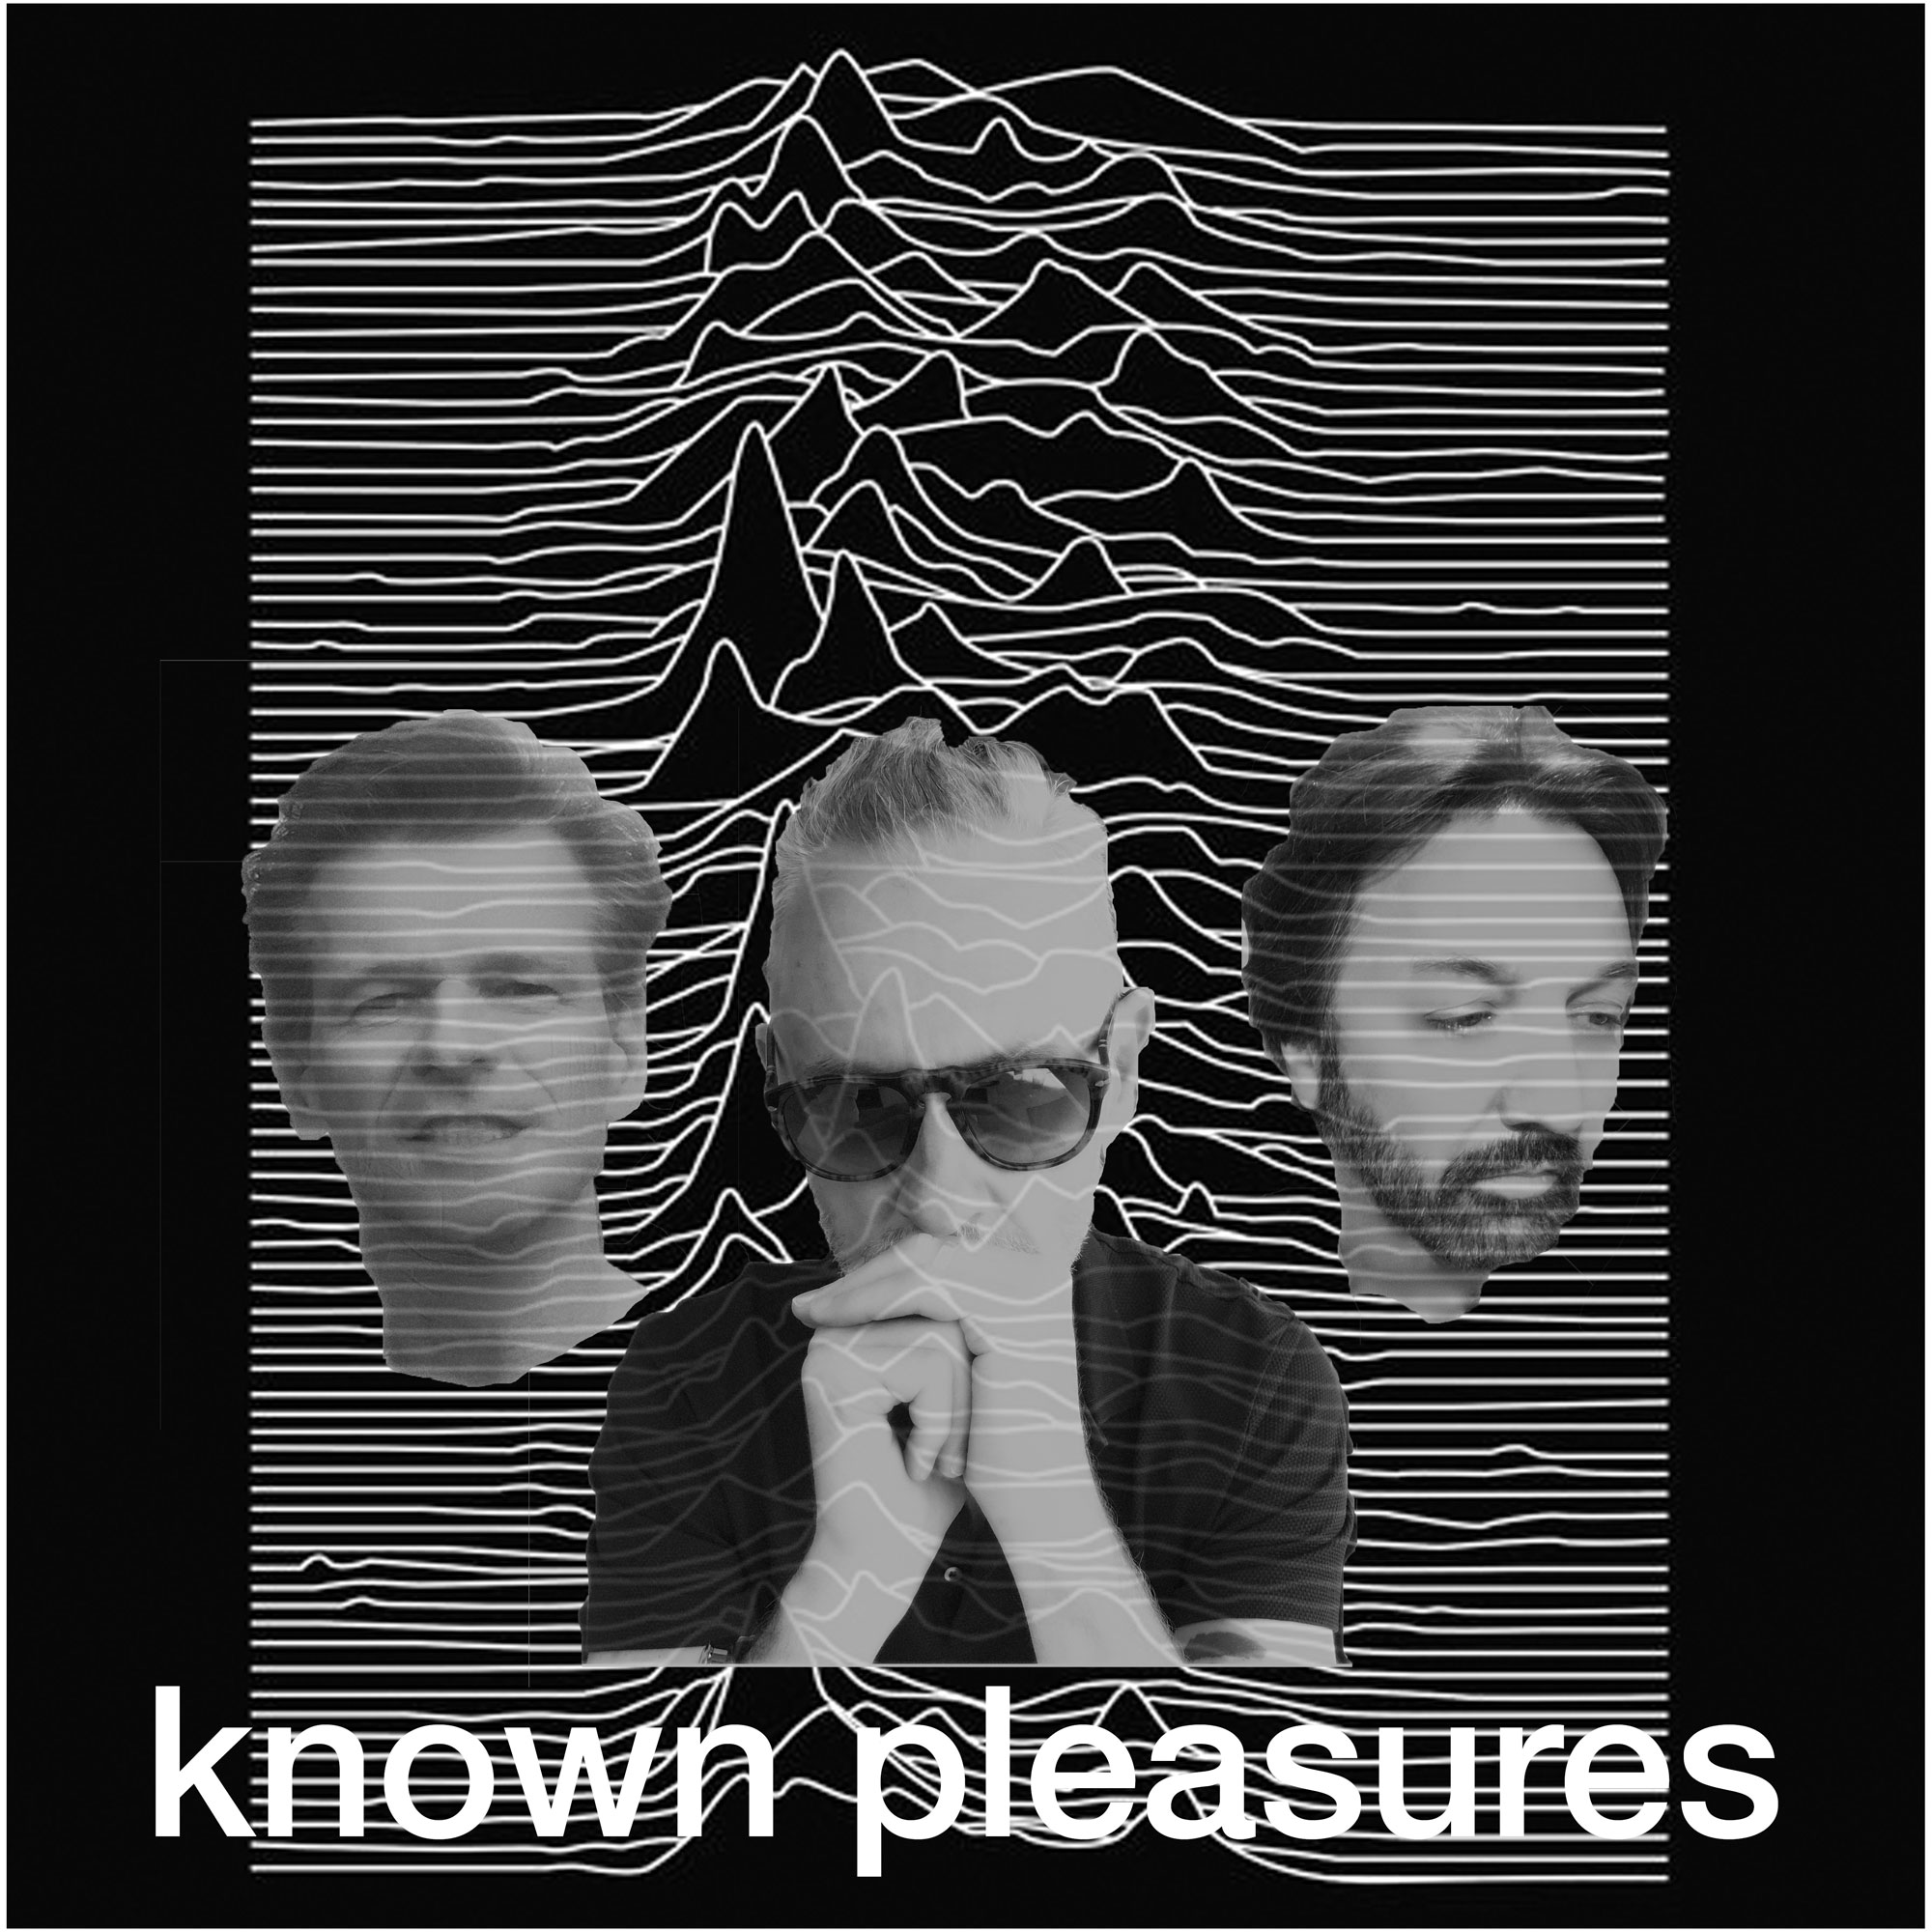 Known Pleasures Ep 4 - Public Image Ltd